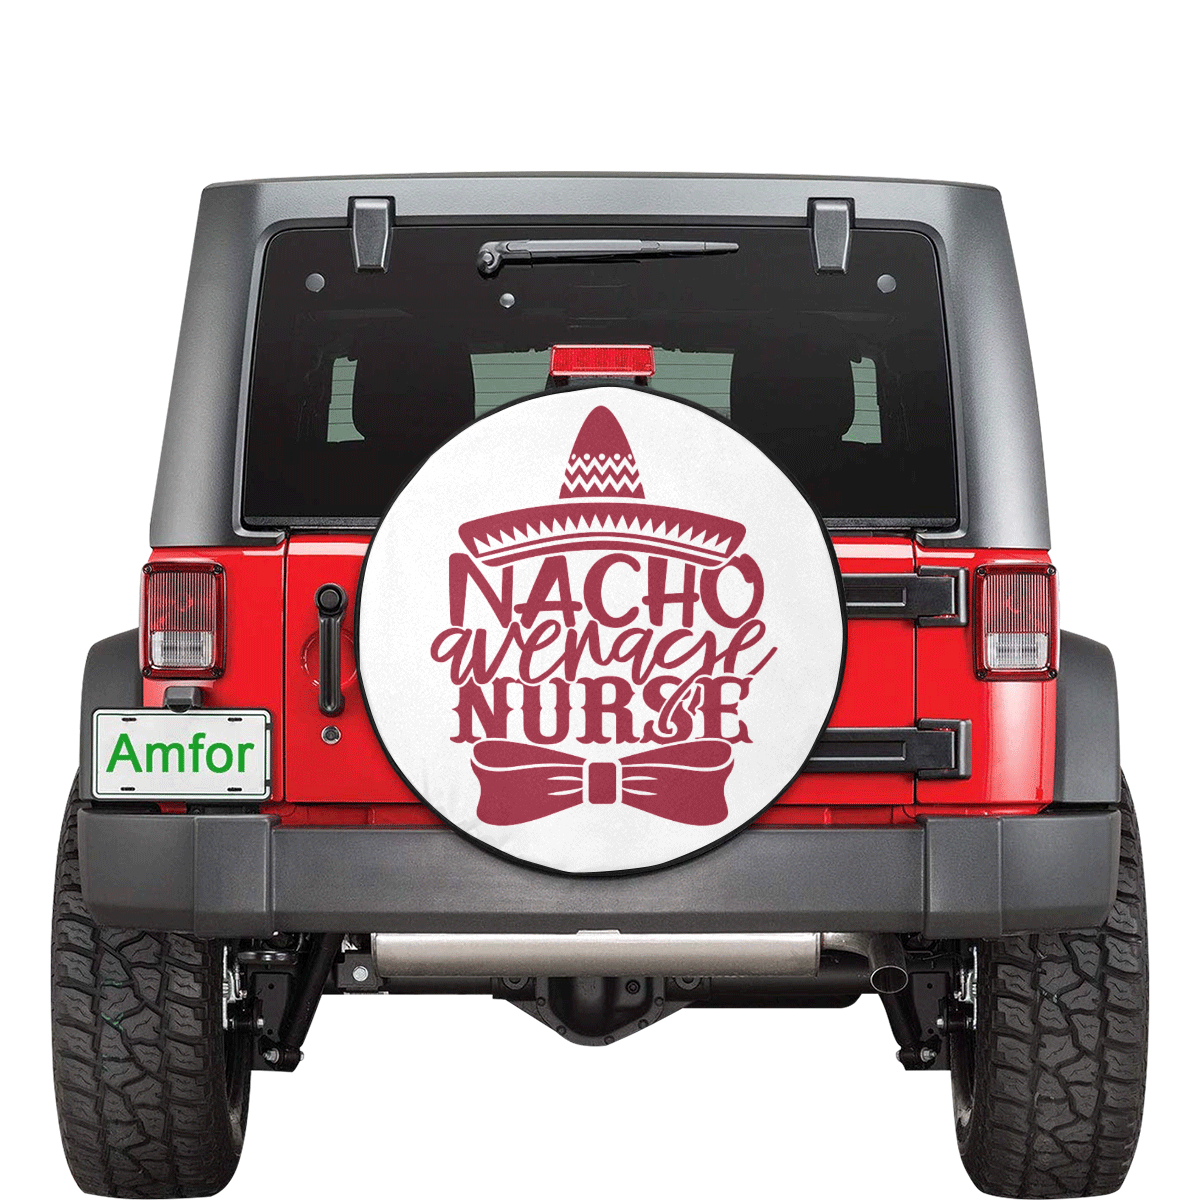 Humor Nacho average Nurse red 30 Inch Spare Tire Cover